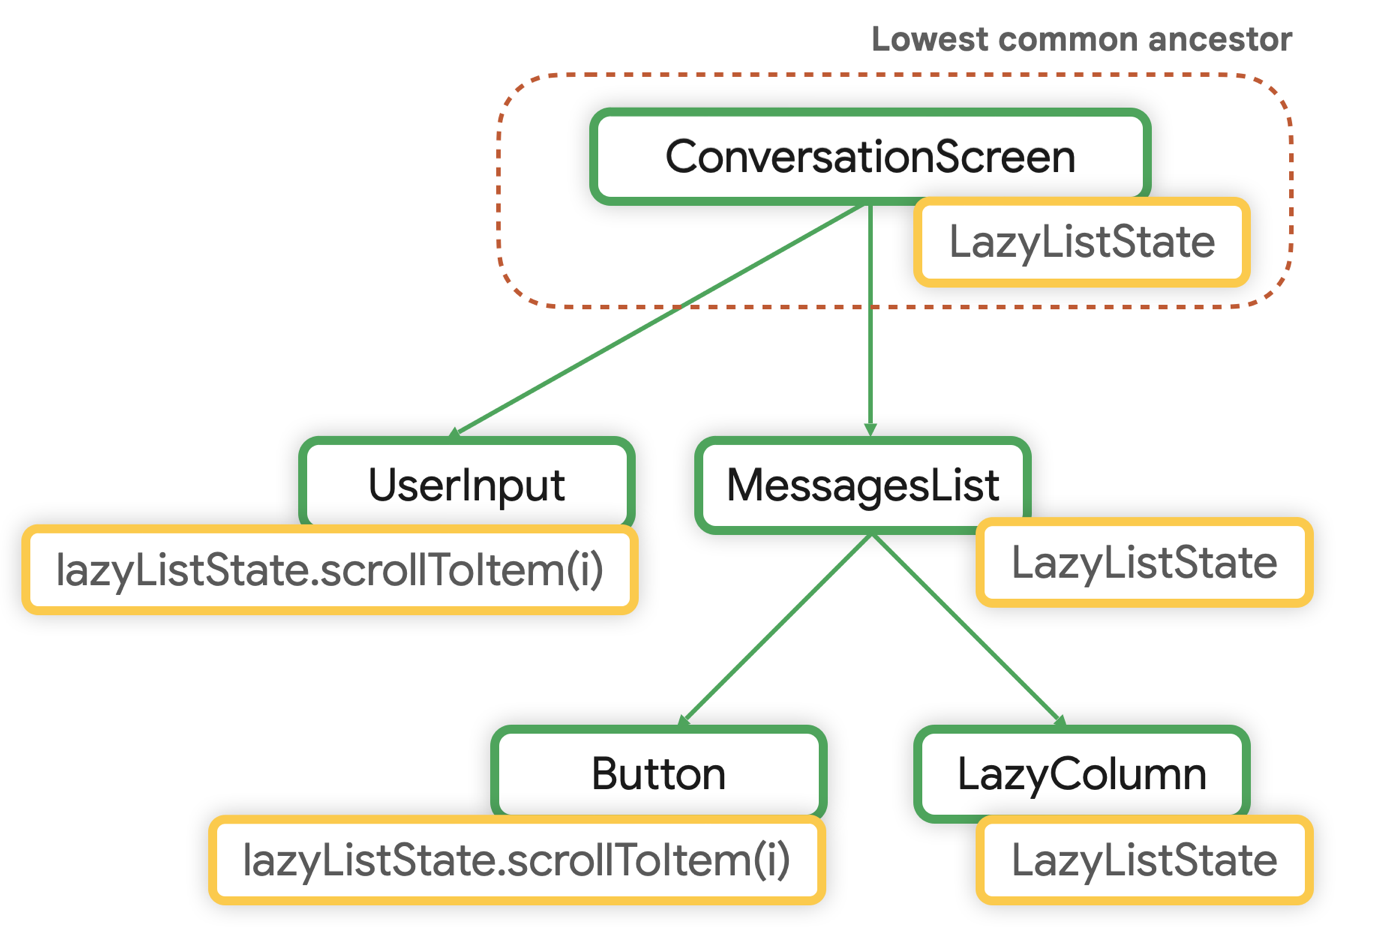 الأصل المشترك الأدنى لـ LazyListState هو ConversationScreen.